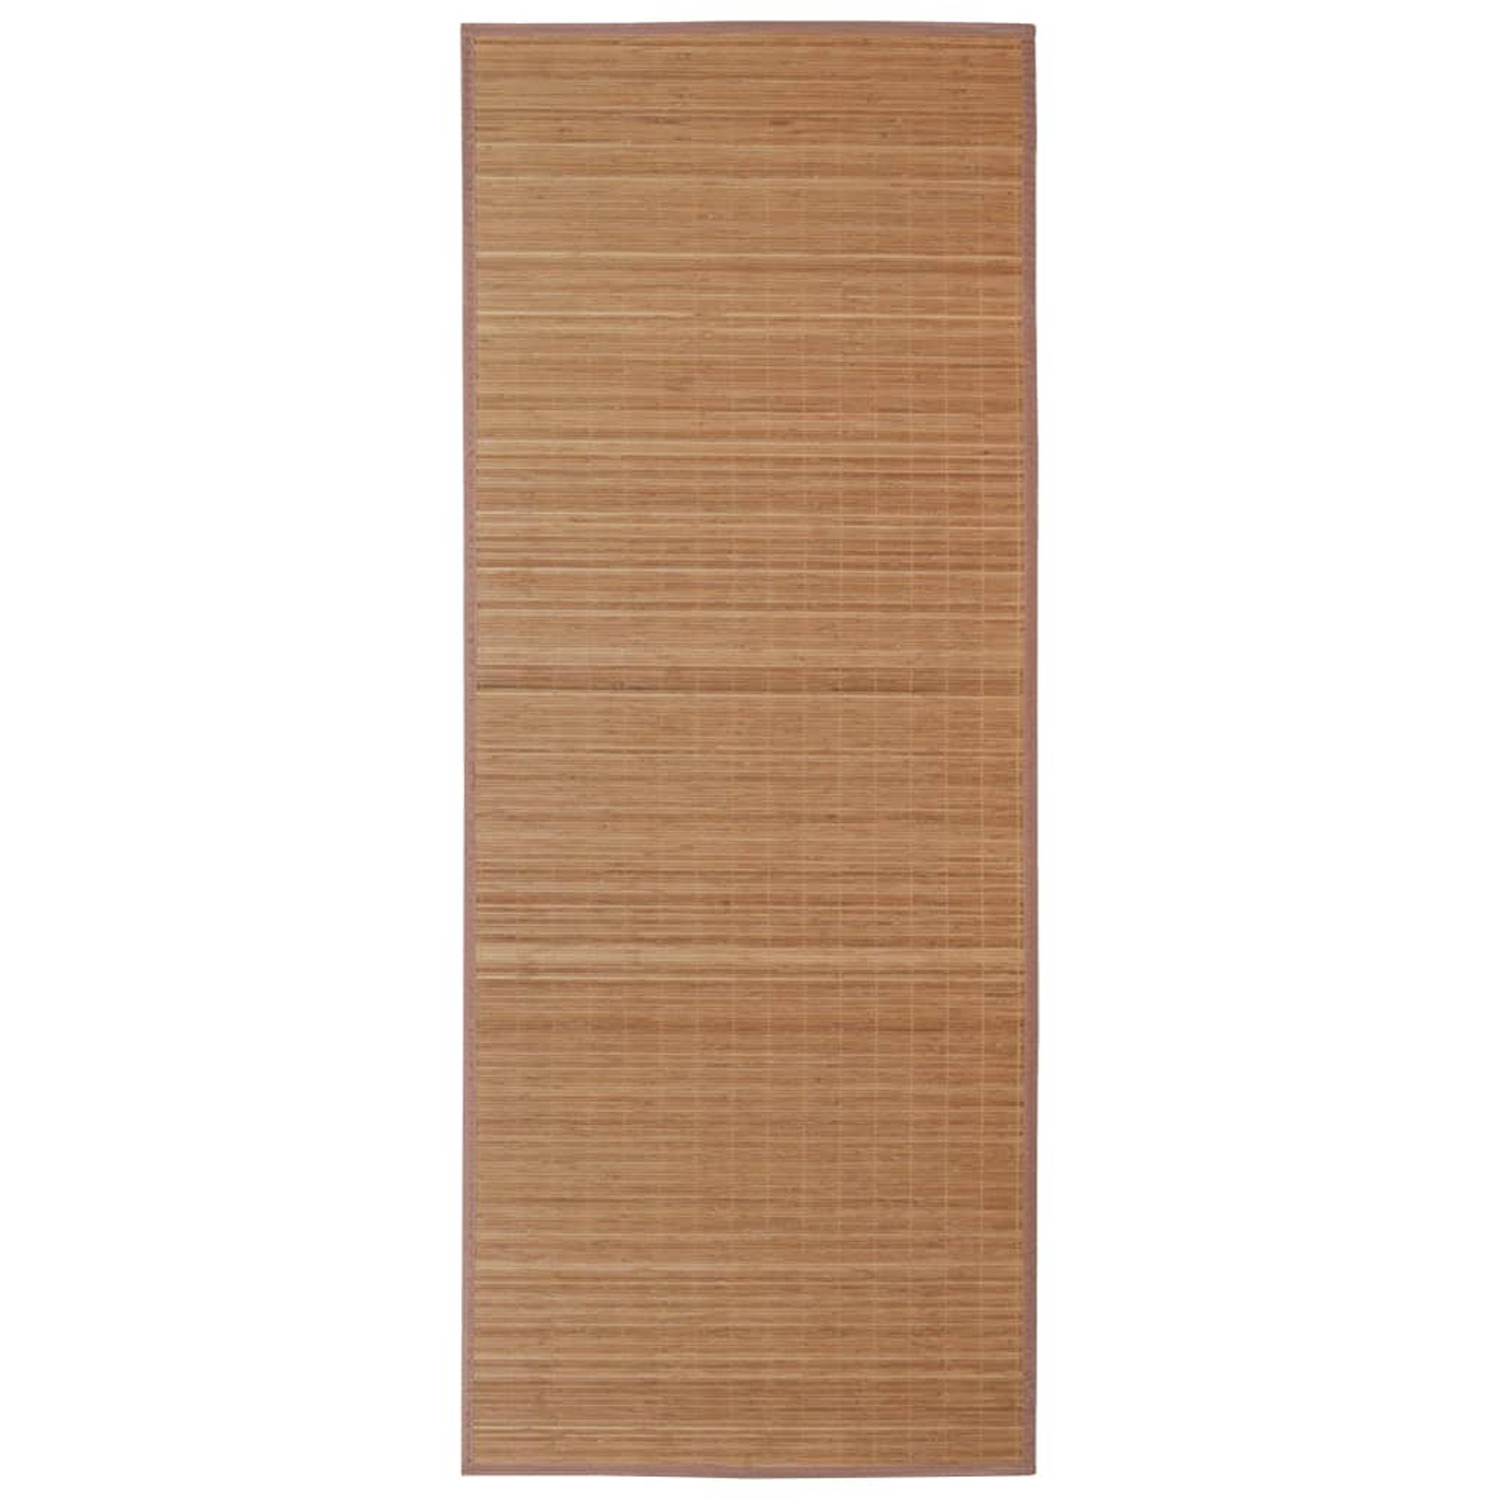 Vierkante bamboe mat 150 x 200 cm (Bruin)